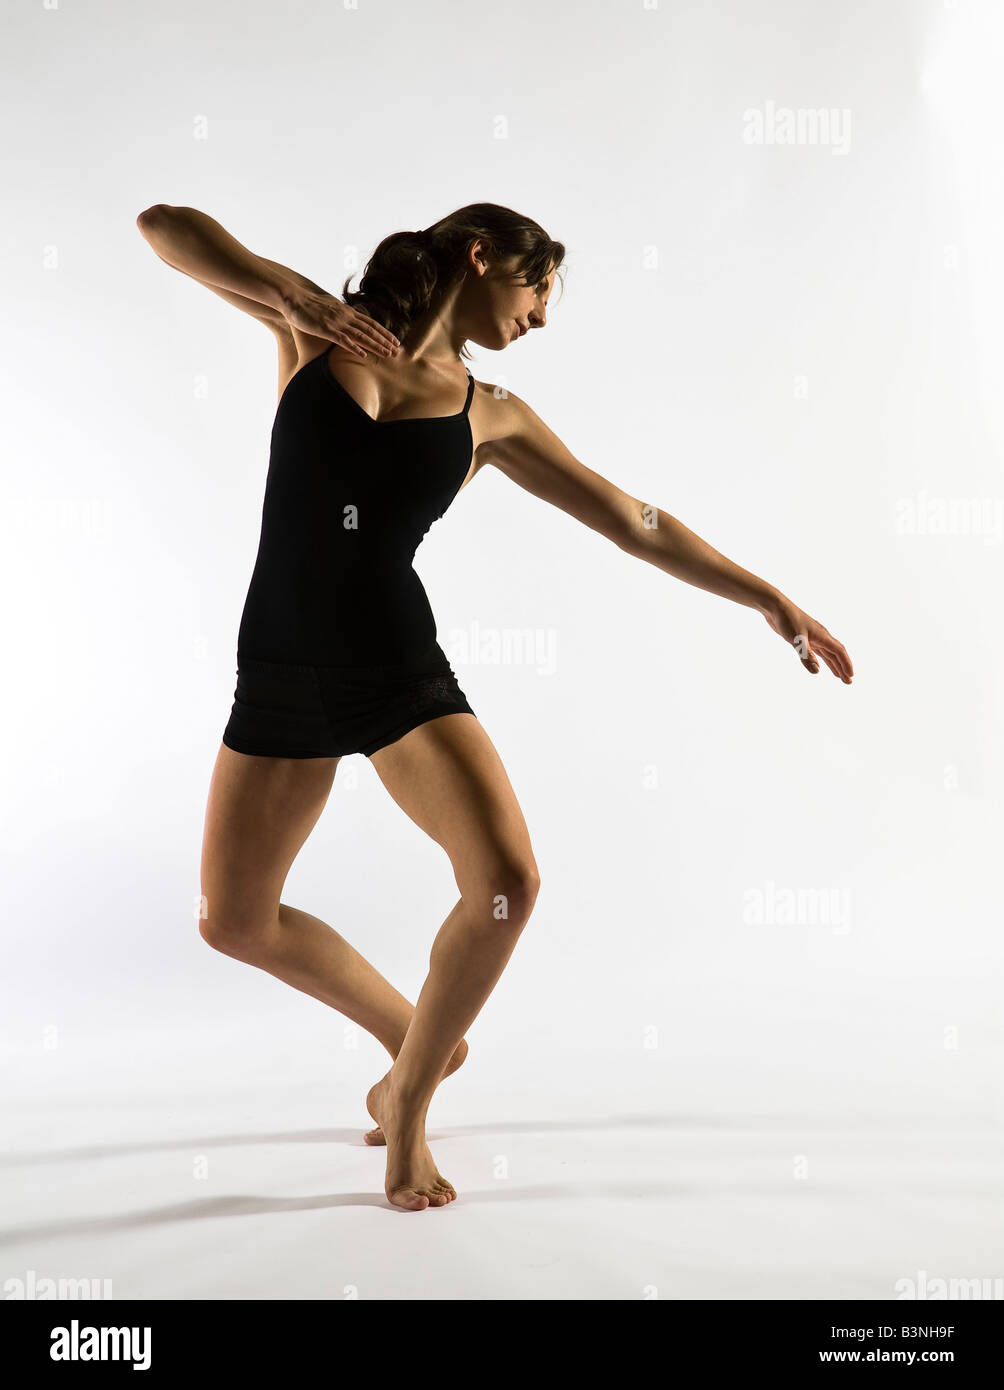 female contemporary dancer Stock Photo - Alamy